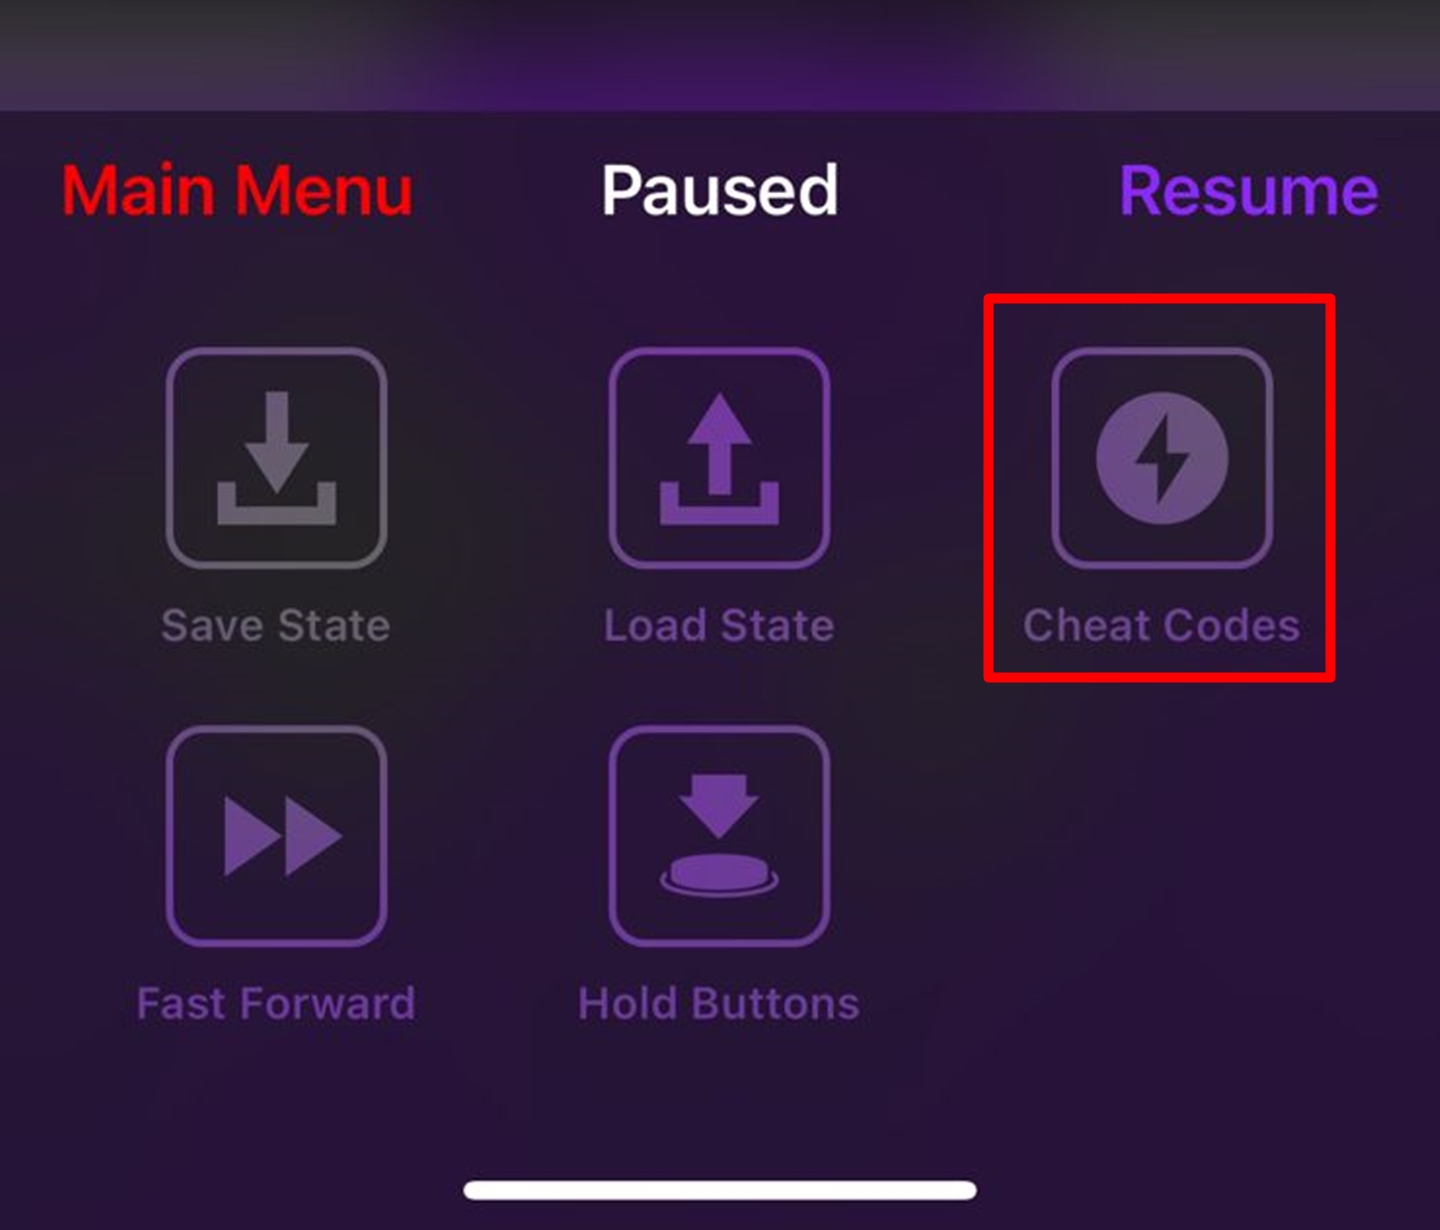 Opção de inserir Cheat Codes no Delta, Emulador disponível no Android e iOS.